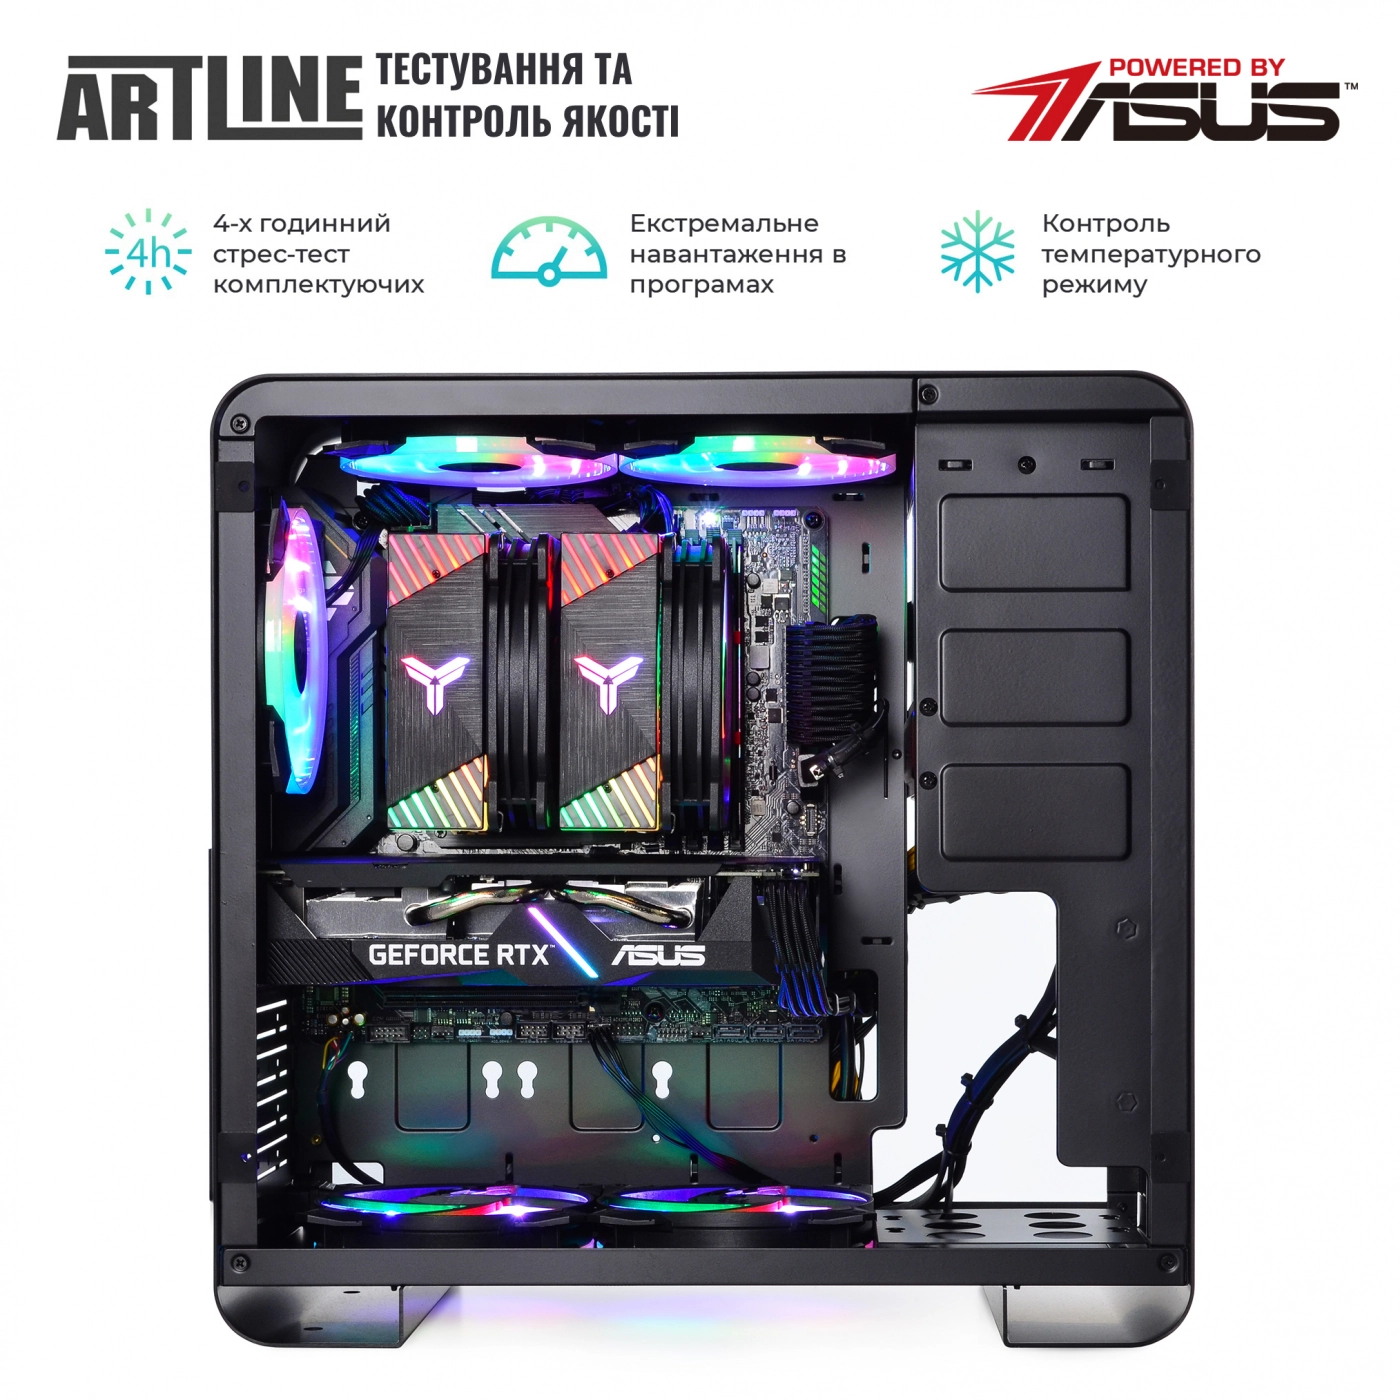 Купить Компьютер ARTLINE Gaming X75v33 - фото 7